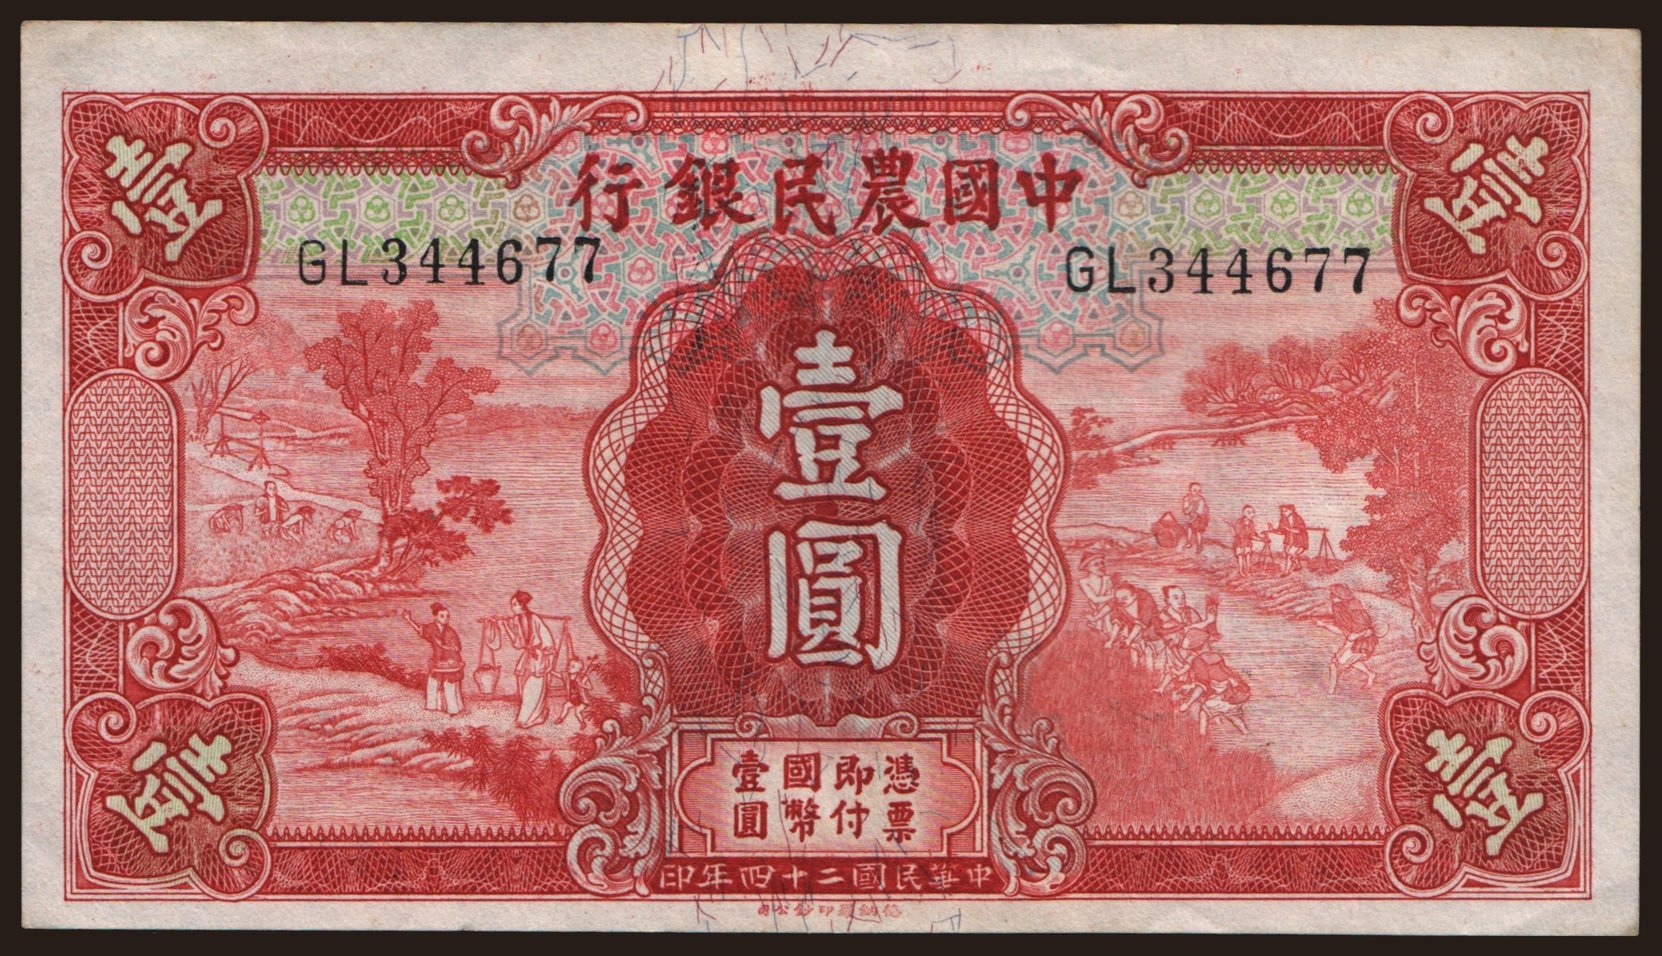 Farmers Bank of China, 1 yuan, 1935